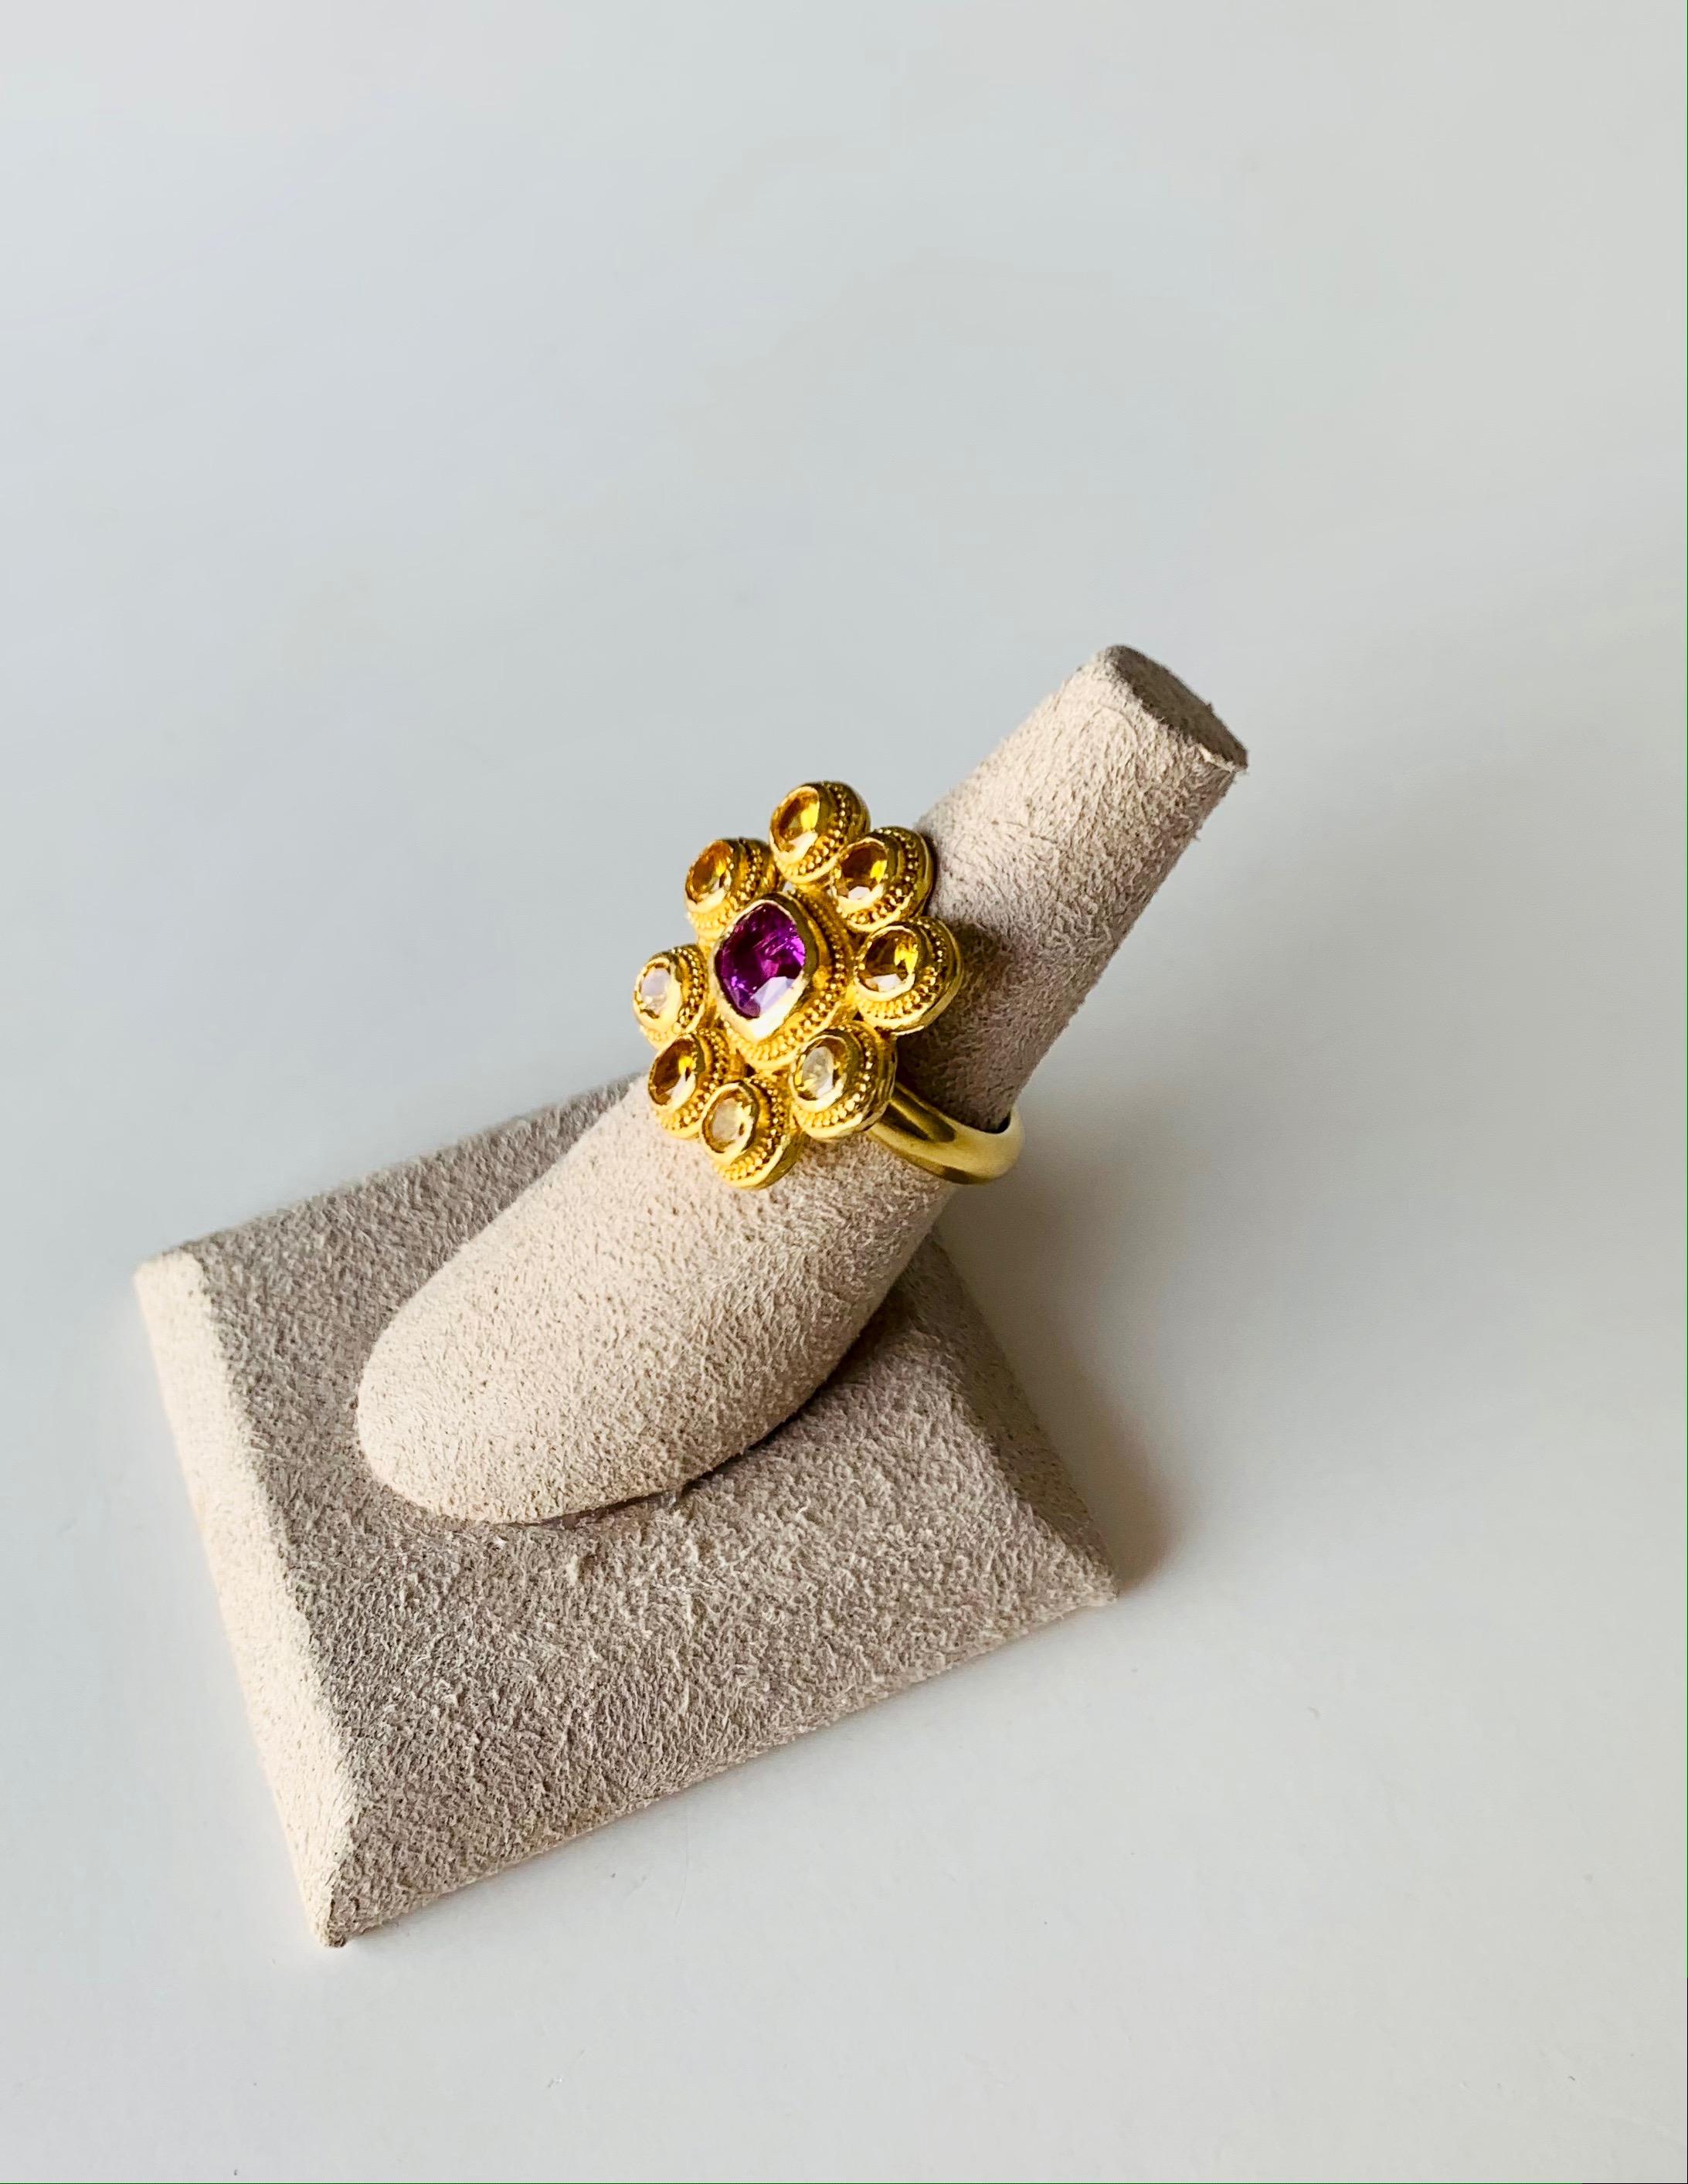 Dieser farbenfrohe Cocktailring mit gelbem und rosa Saphir verleiht jedem Anlass und jedem Outfit Glanz.
die Steine sind in 22 Karat Gold gefasst und mit Granulation versehen.
Sie wird von der Künstlerin in ihrem New Yorker Atelier vollständig von